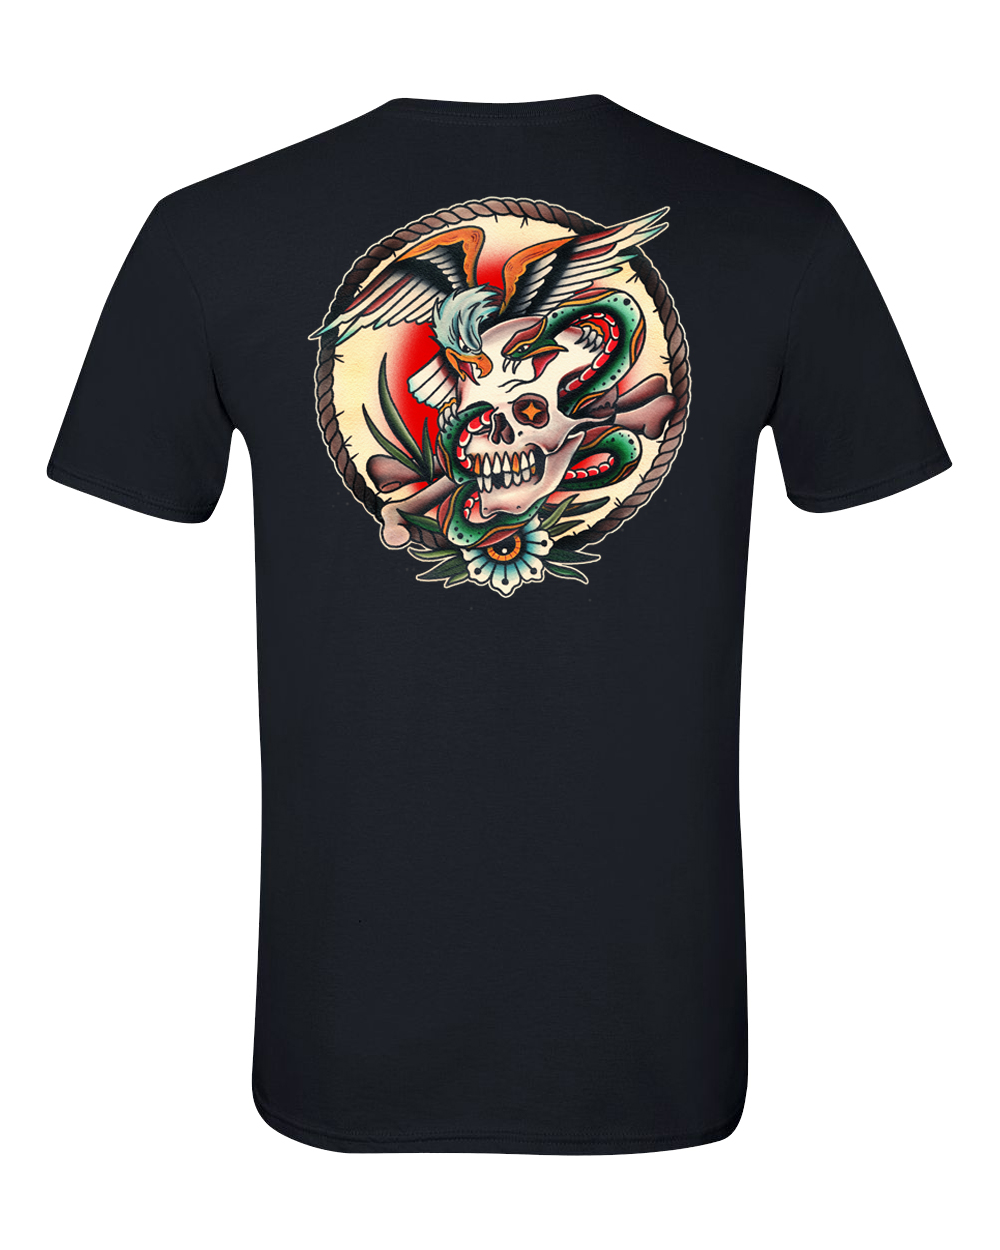 KHT “Skull, Eagle & Snake” unisex t-shirt